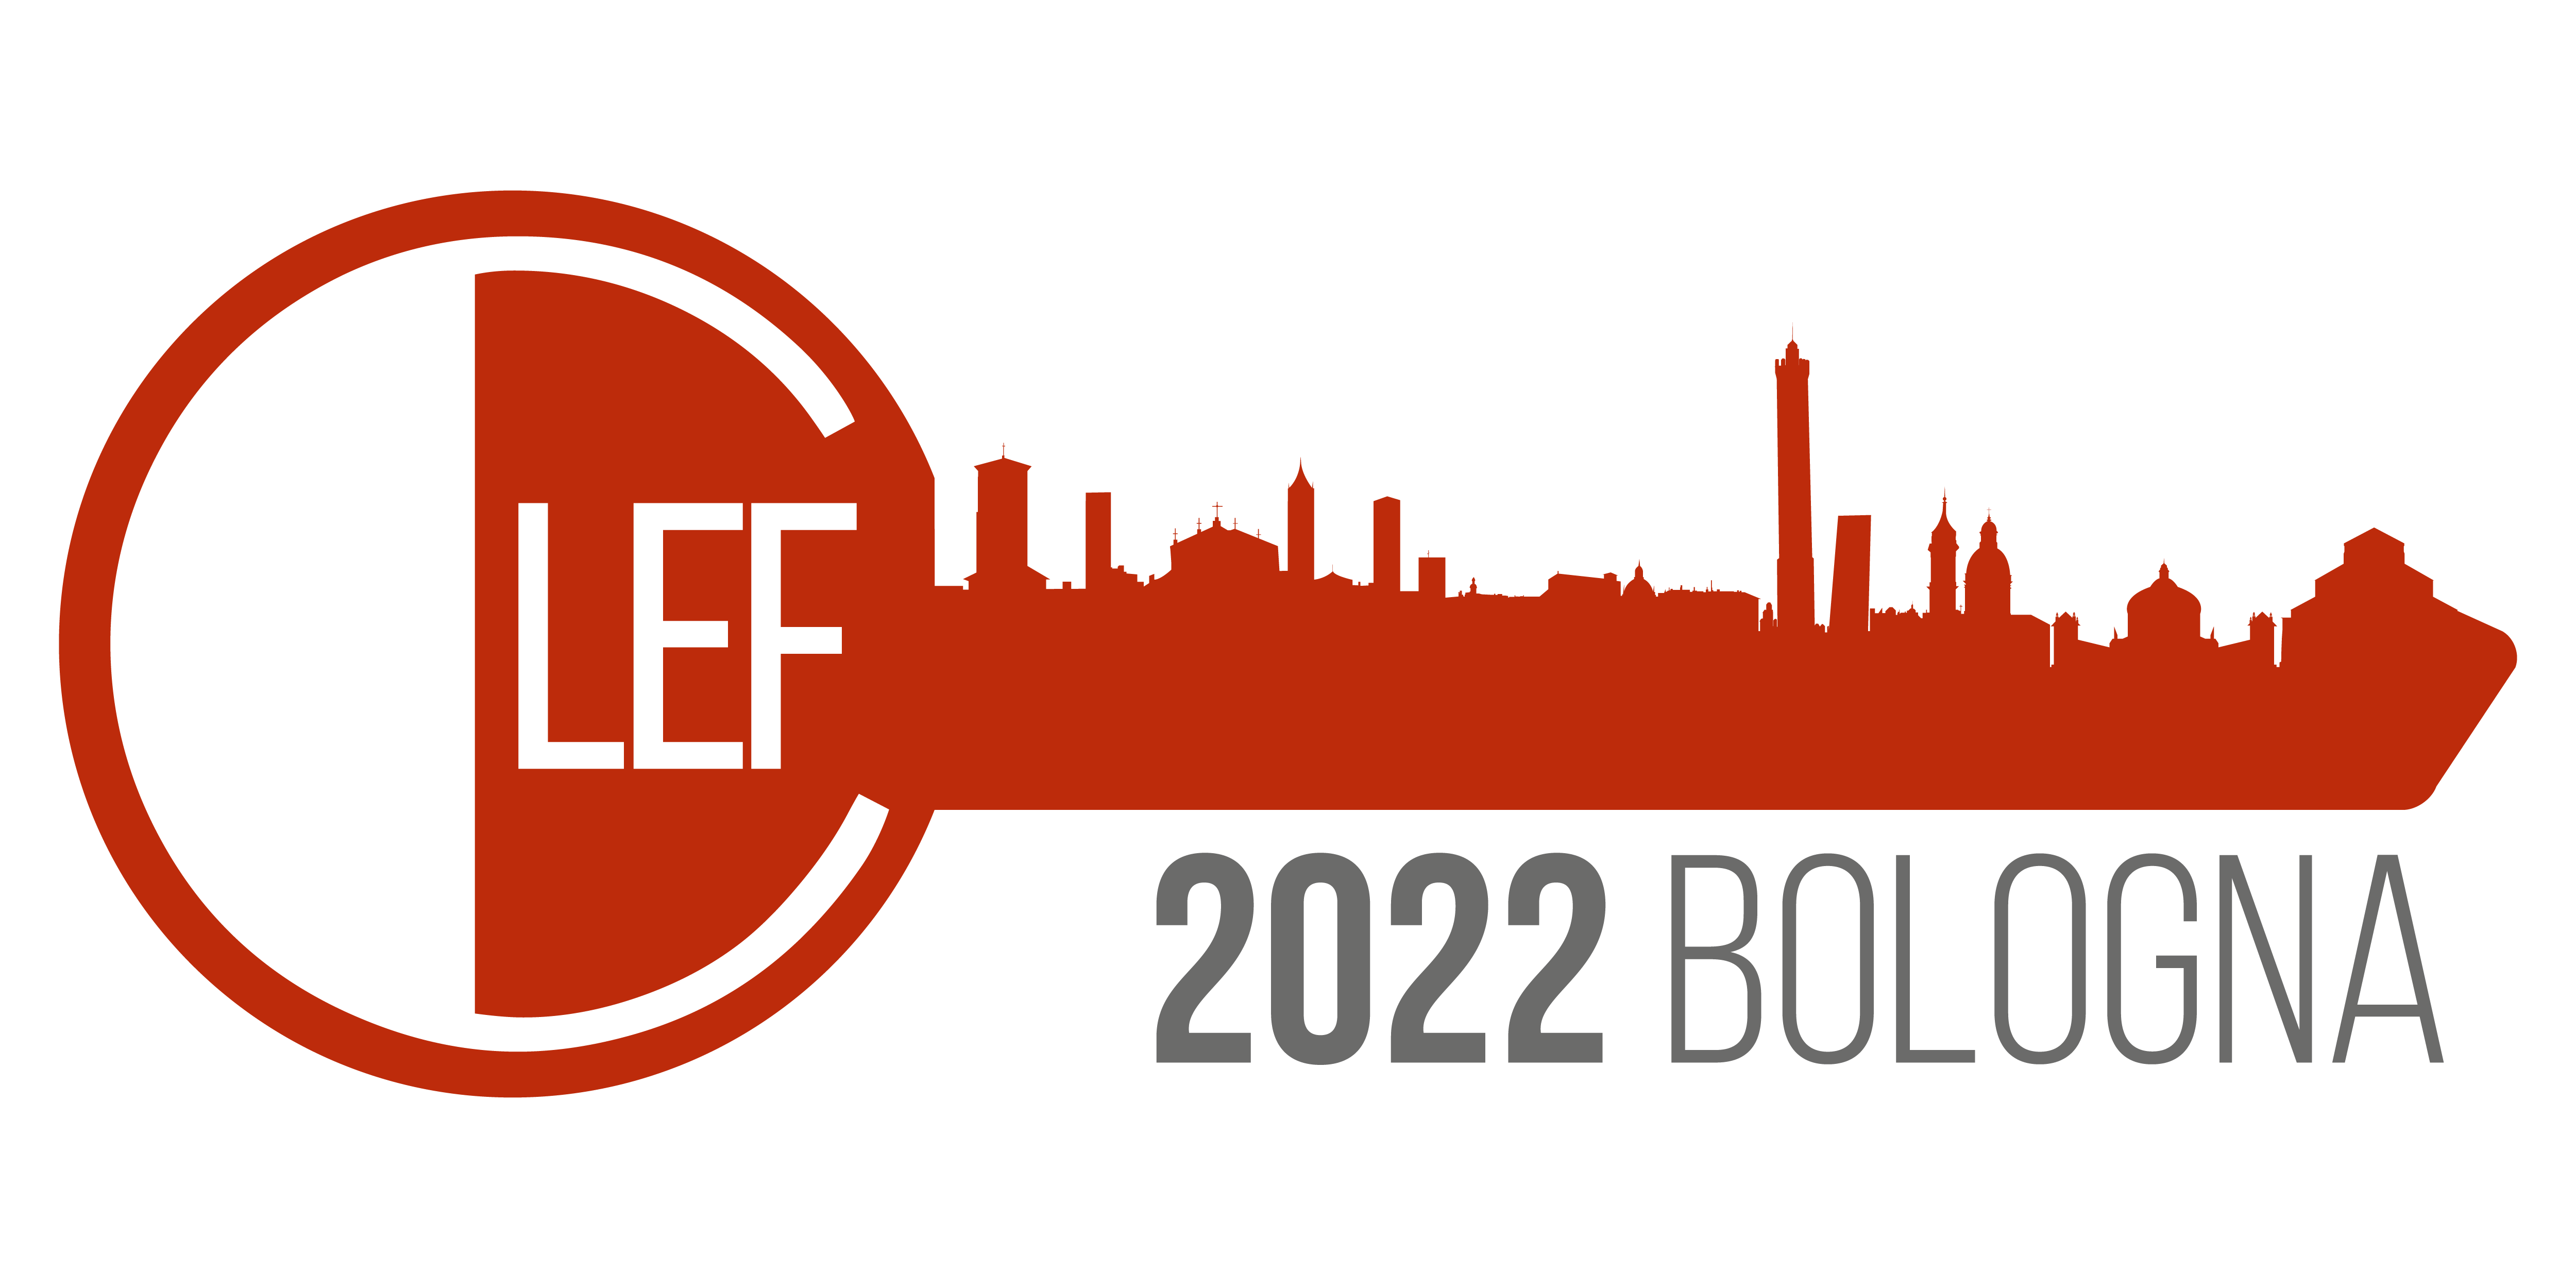 CLEF'22 logo